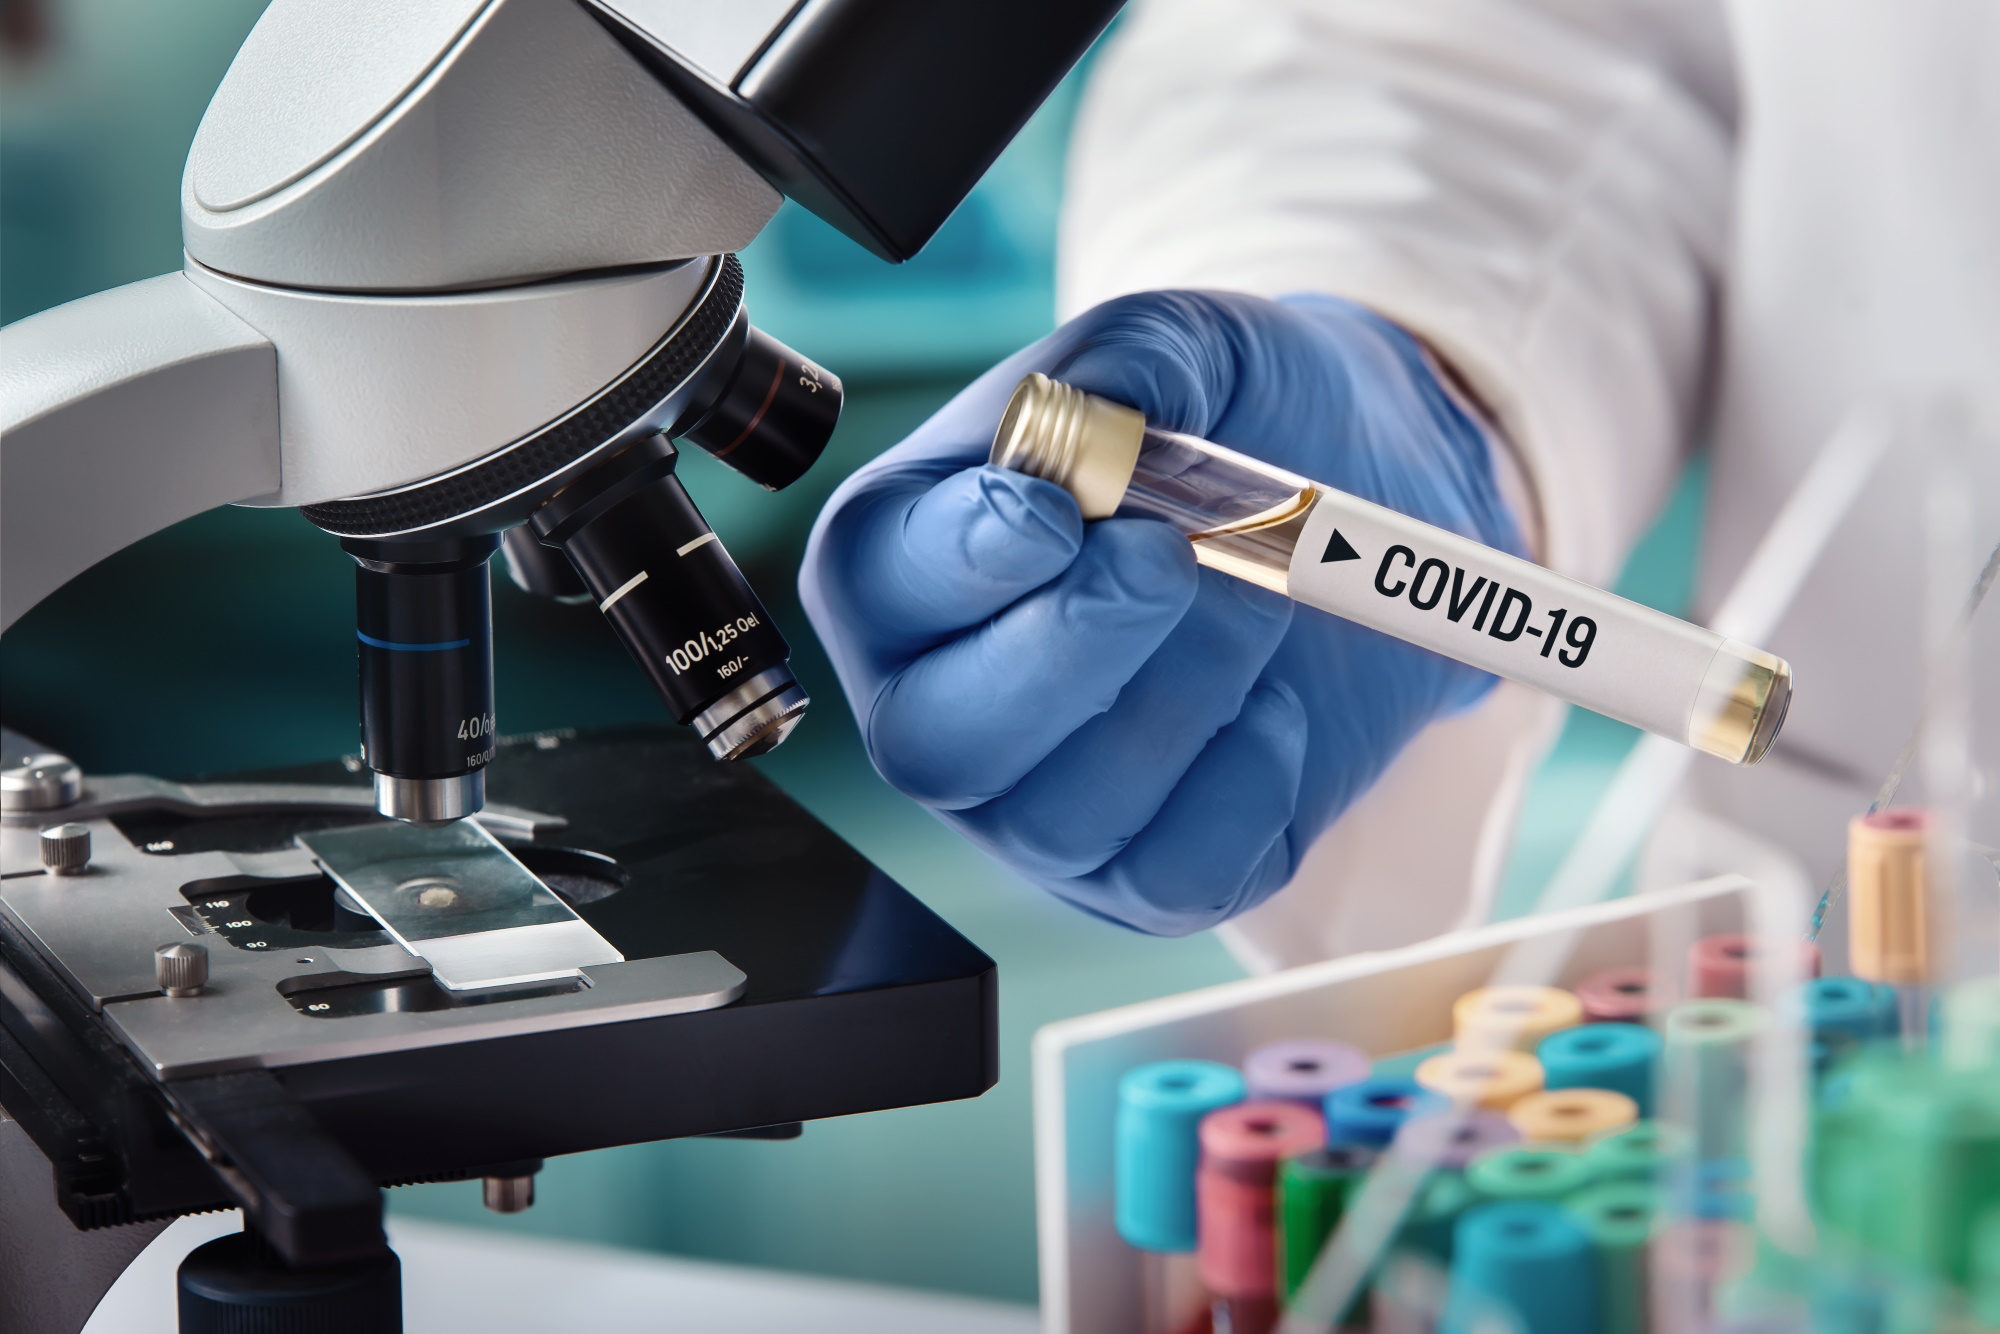 COVID-19 wskazał jednoznacznie na niebezpieczeństwa wynikające z pozyskiwania wyrobów medycznych od oddalonych producentów. Fot. Shutterstock 